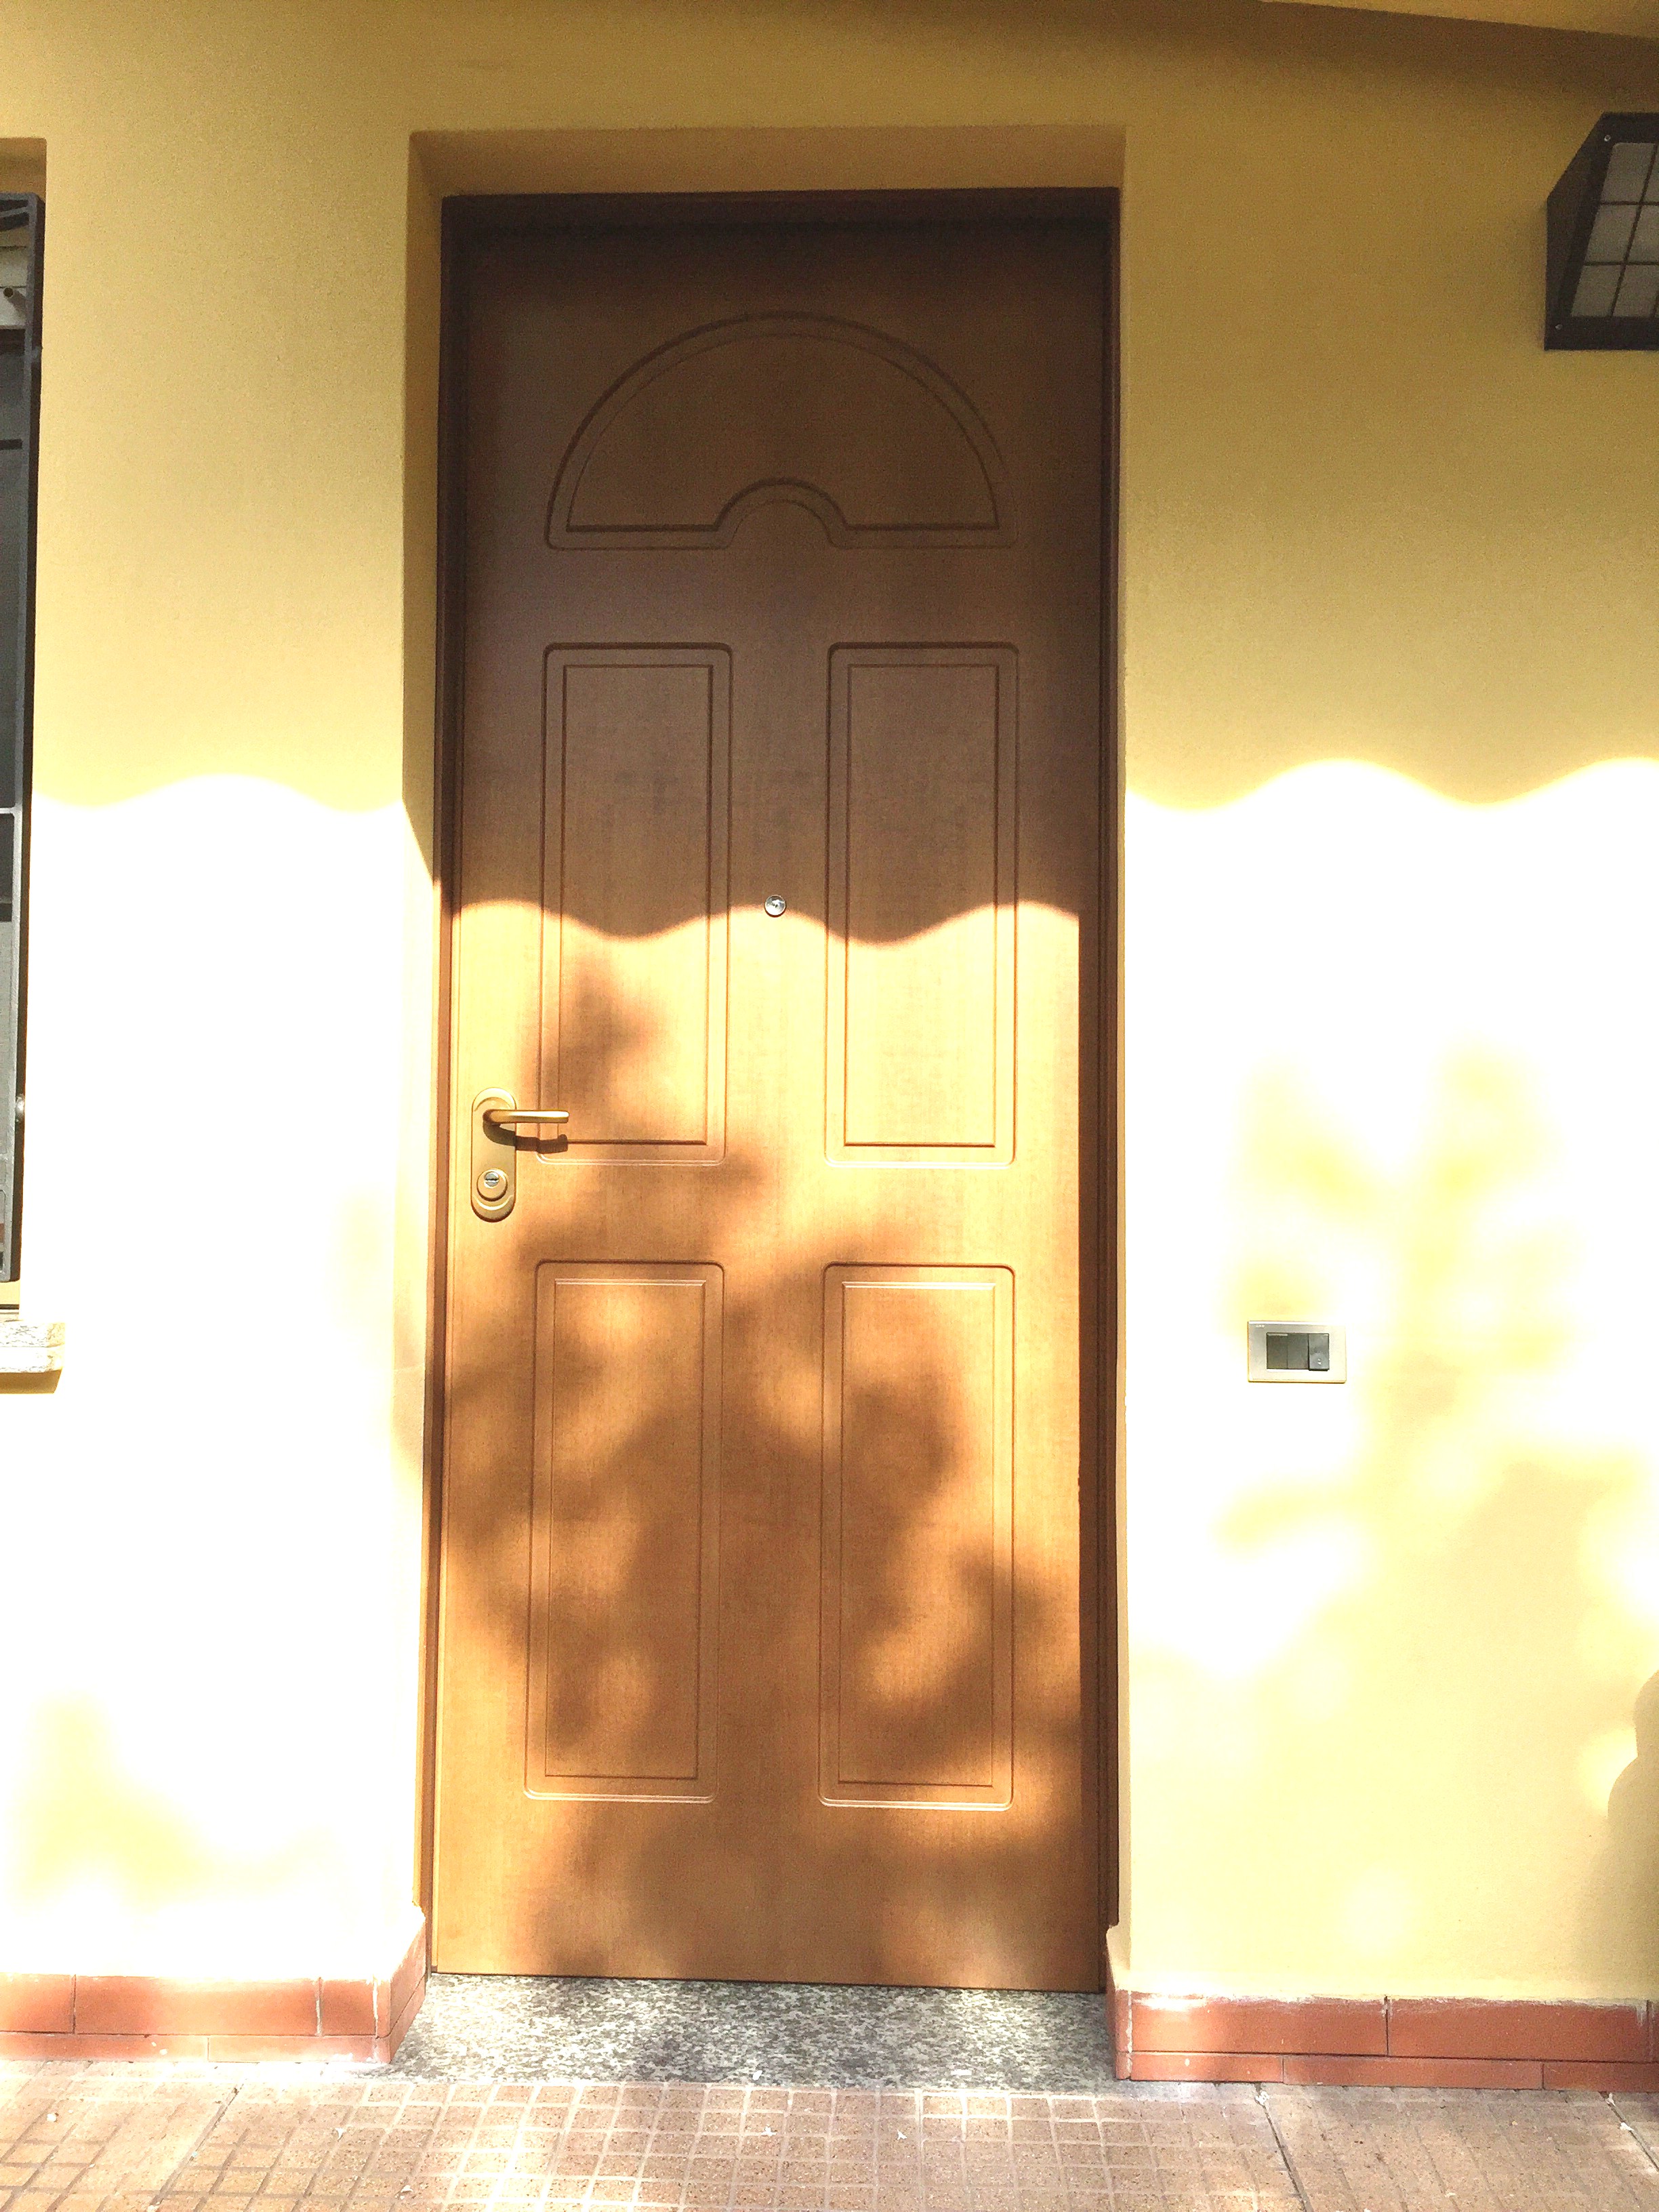 Porta blindata Dierre mod. Double 1 Plus , abitazione a Cremona.